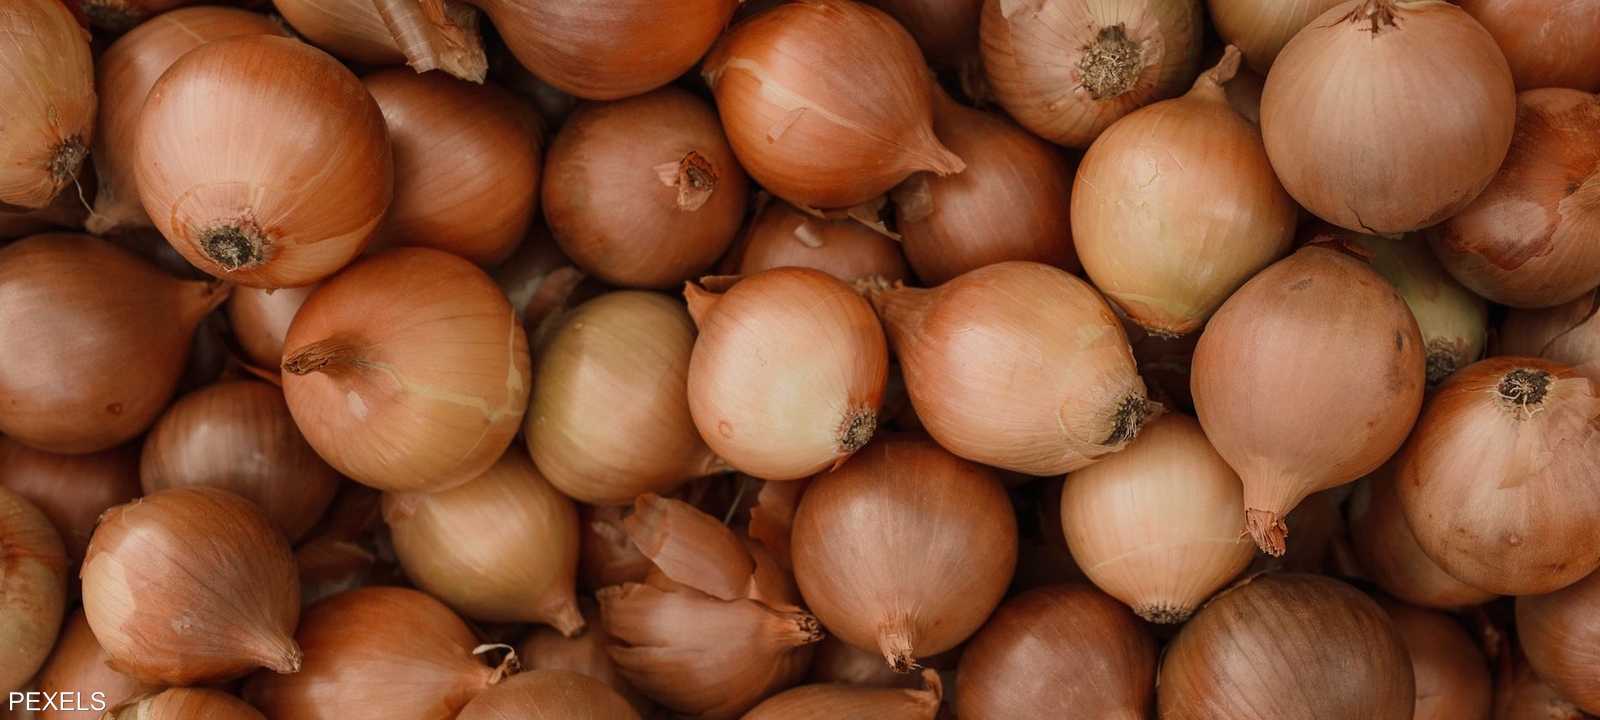 المغرب.. البصل يتربع على قائمة أسعار الخضروات الملتهبة